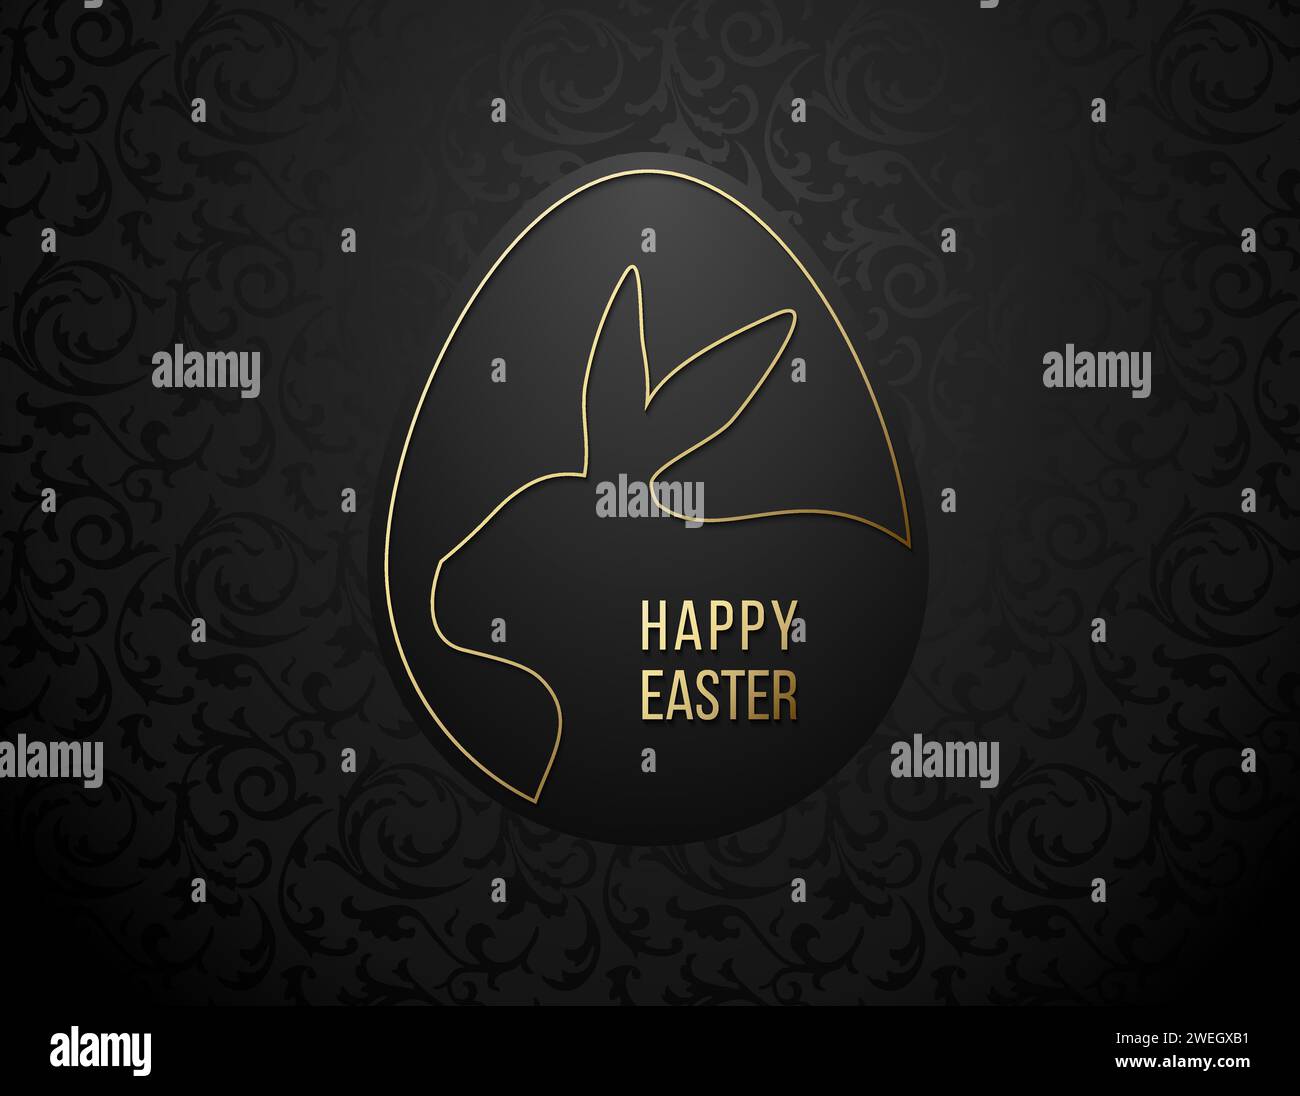 Carte de voeux joyeuses Pâques avec cadre en forme d'oeuf de ligne dorée, silhouette de lapin de Pâques. Logo lapin de Pâques. Fond de motif floral noir et or Illustration de Vecteur